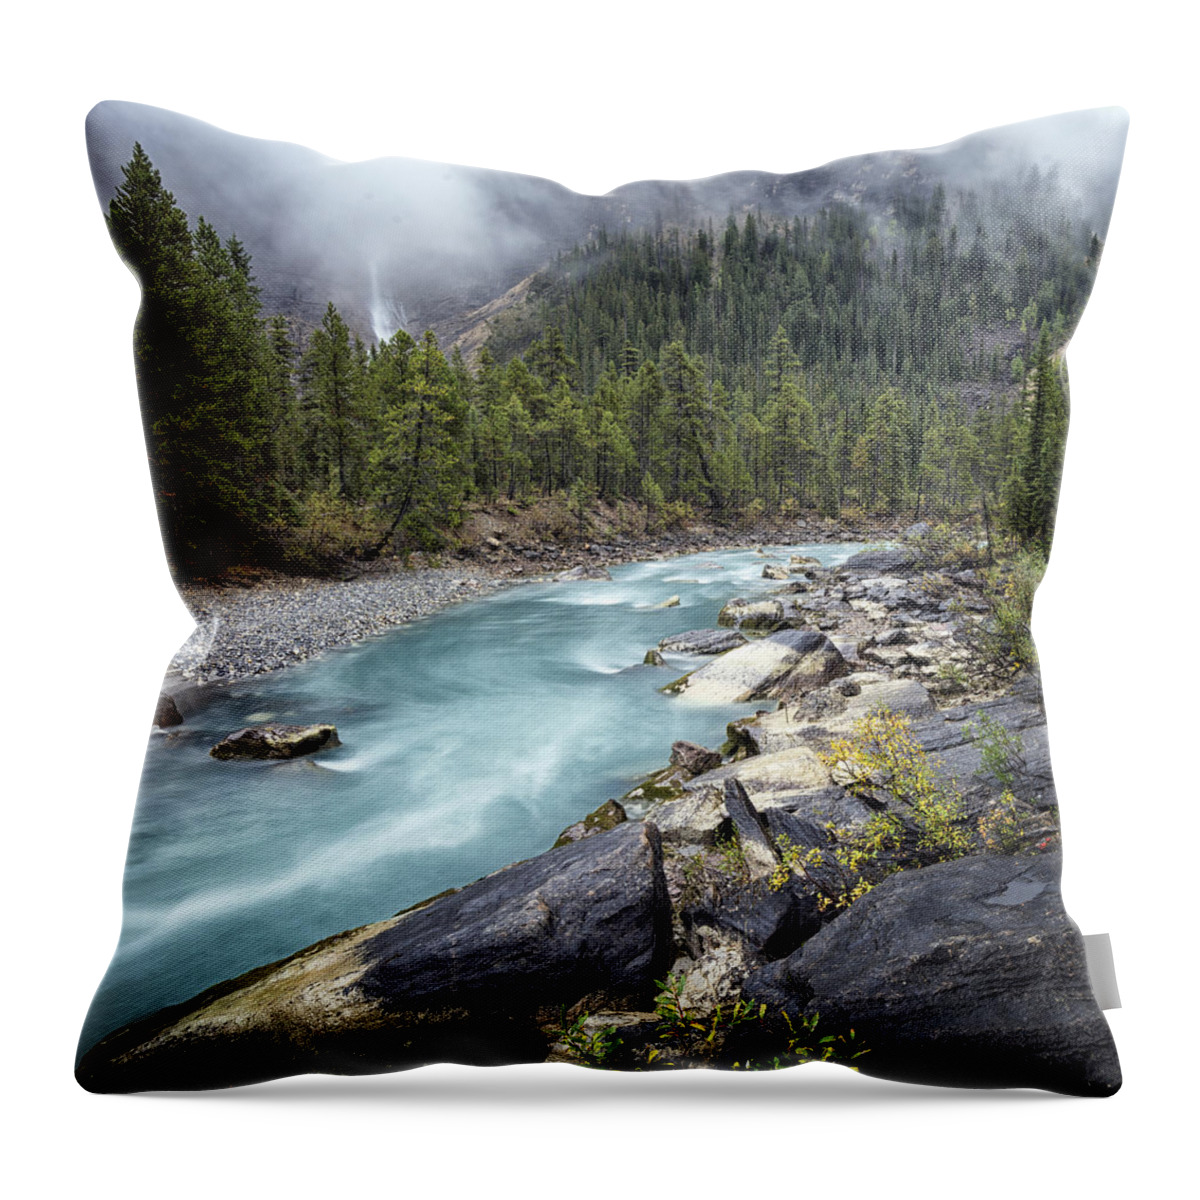 Canada Throw Pillow featuring the photograph September Rain by Robert Fawcett